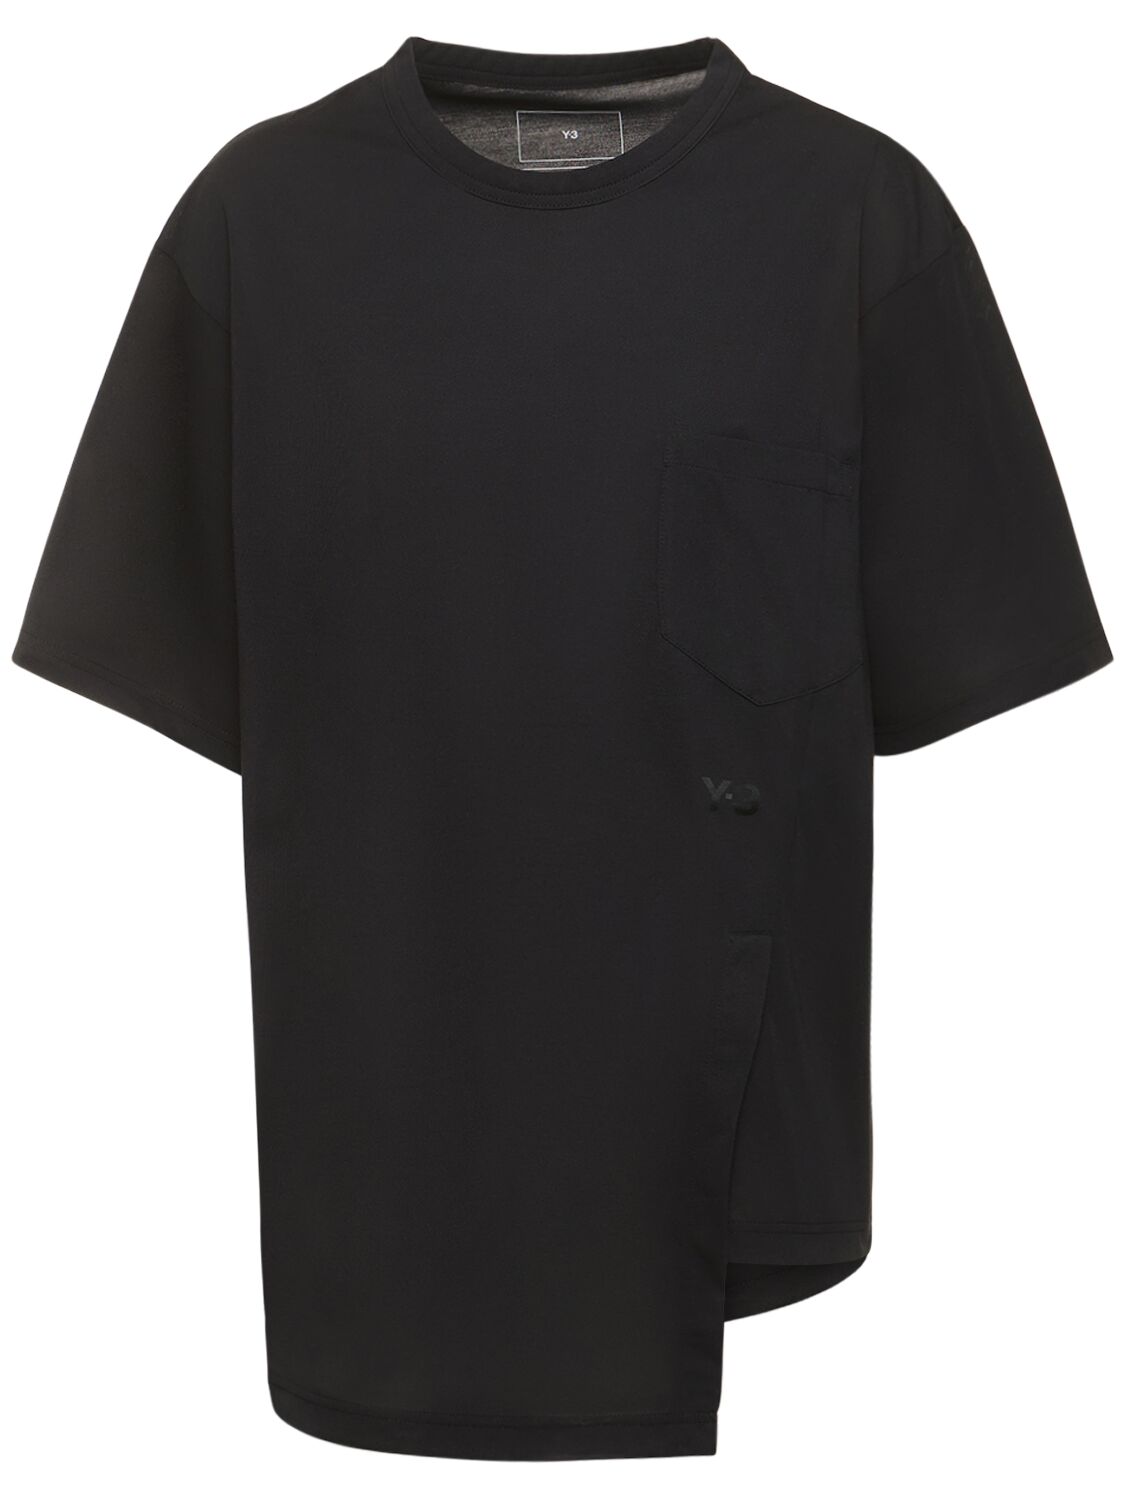 Y-3 Prem宽松短袖t恤 In Black